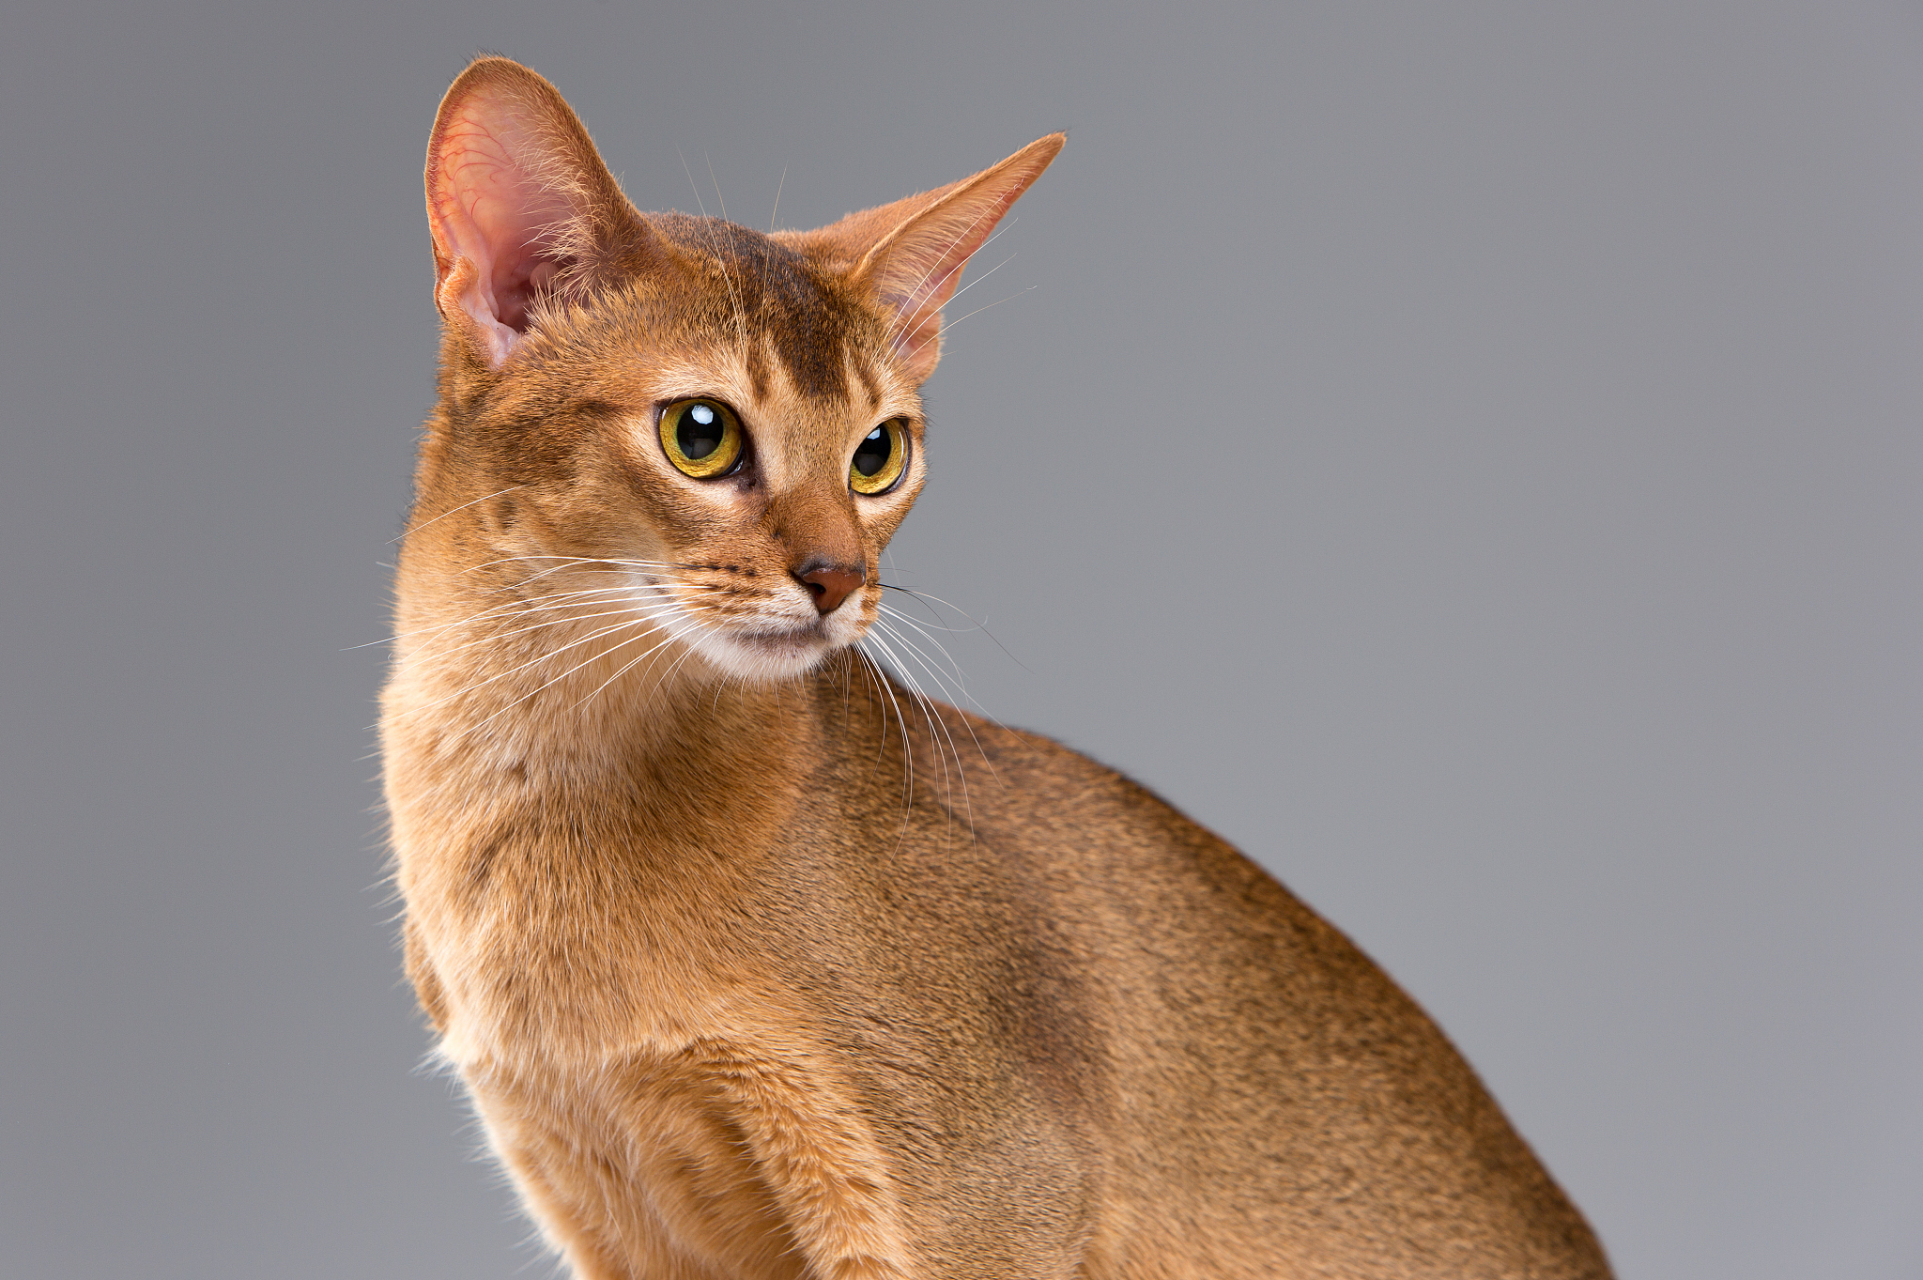 阿比西尼亚猫是一种独特的猫种,其特点包括其外观,性格和历史背景